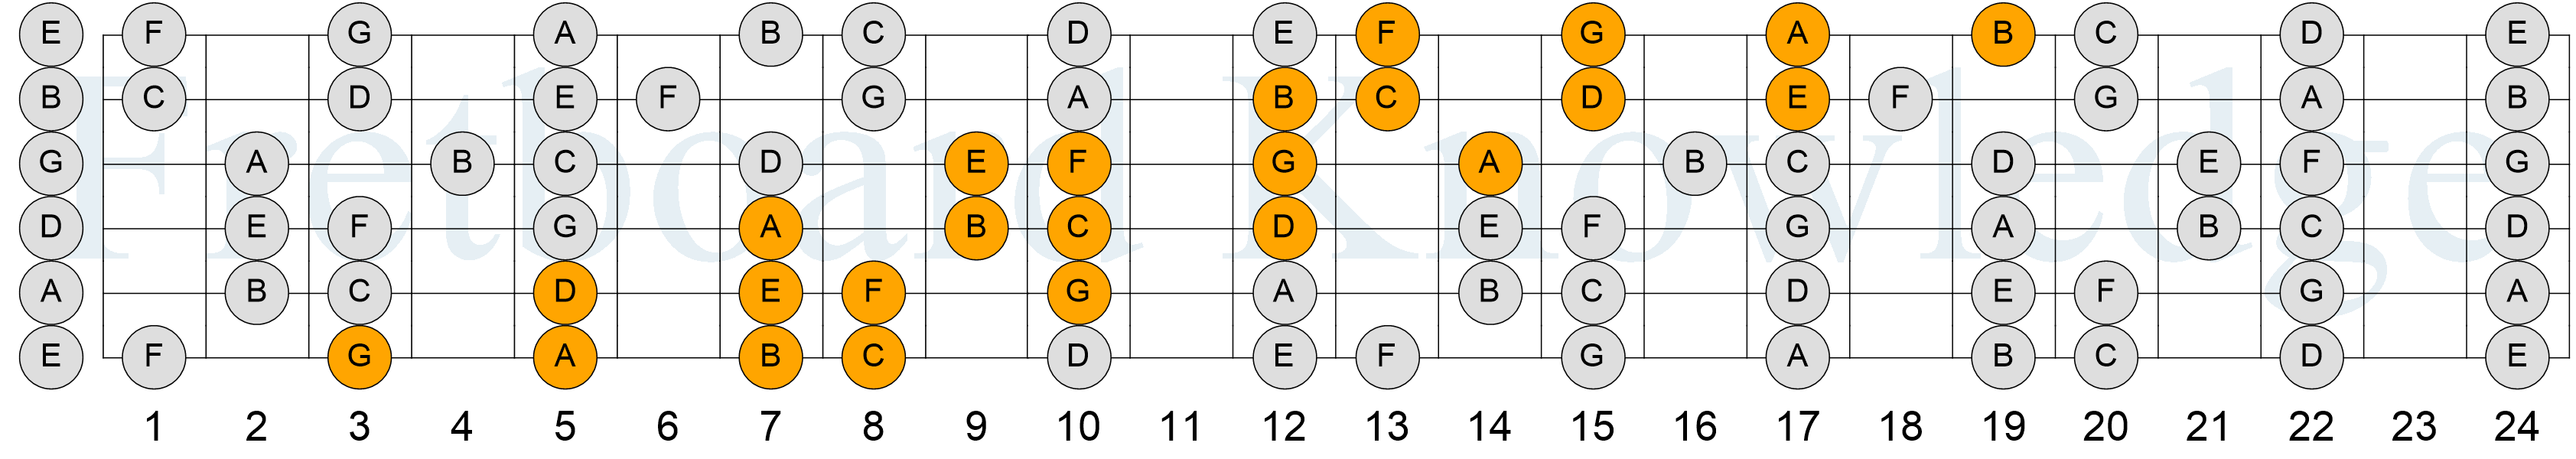 C Major Scale - 4NPS - Pattern 3